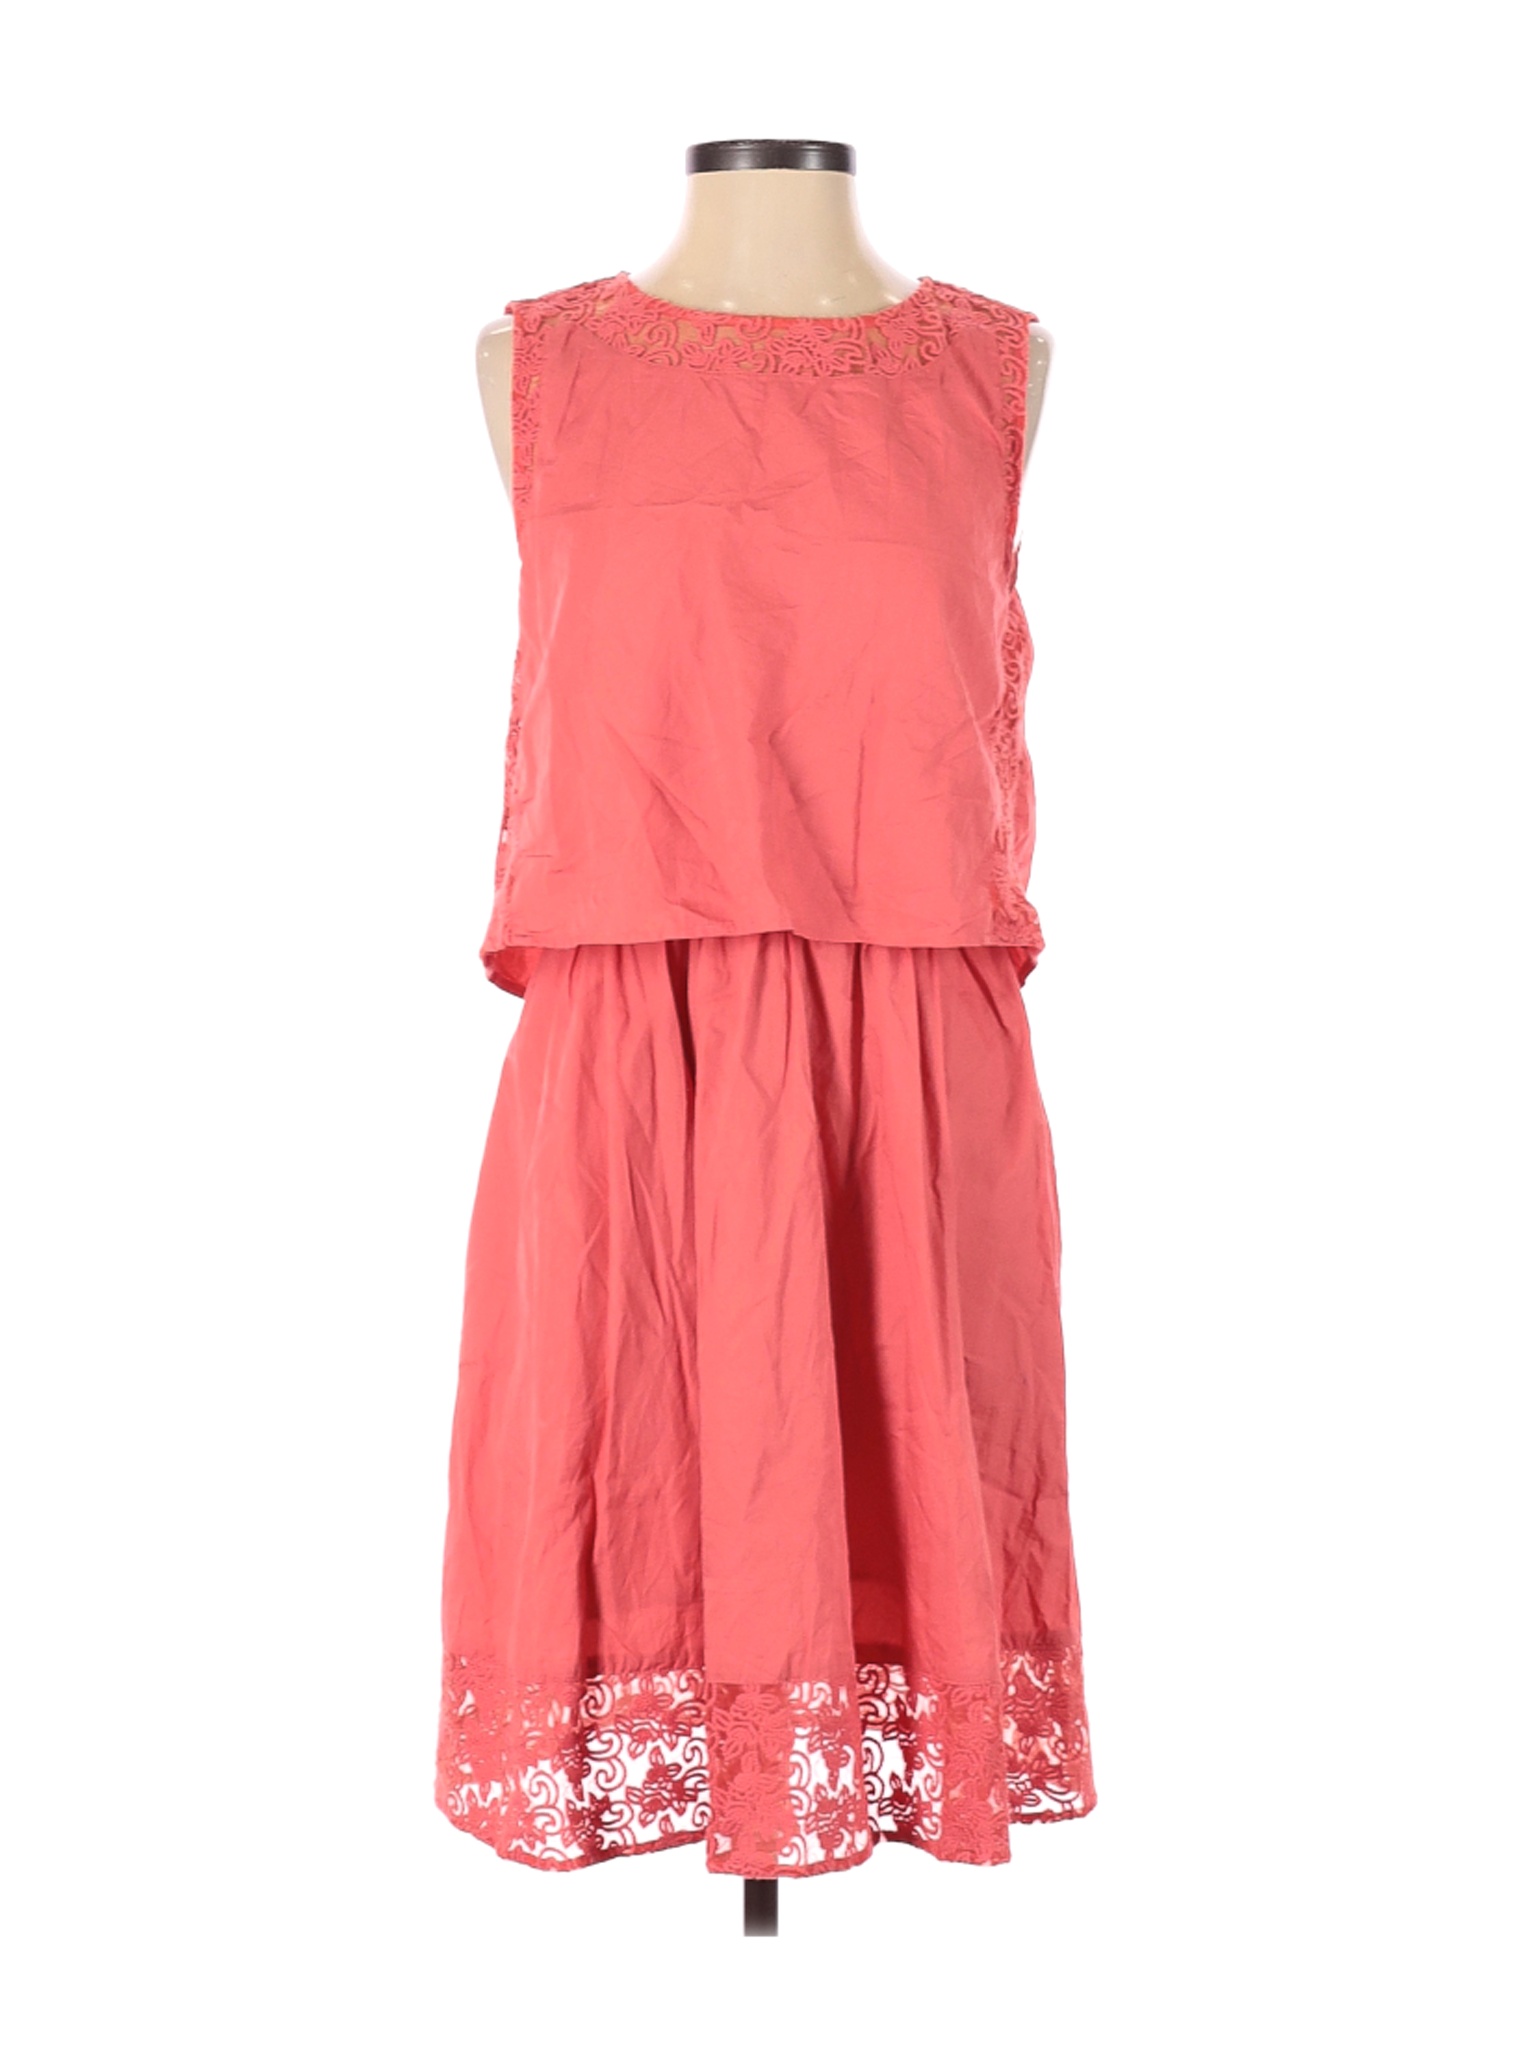 Chelsea28 Women Pink Casual Dress S | eBay